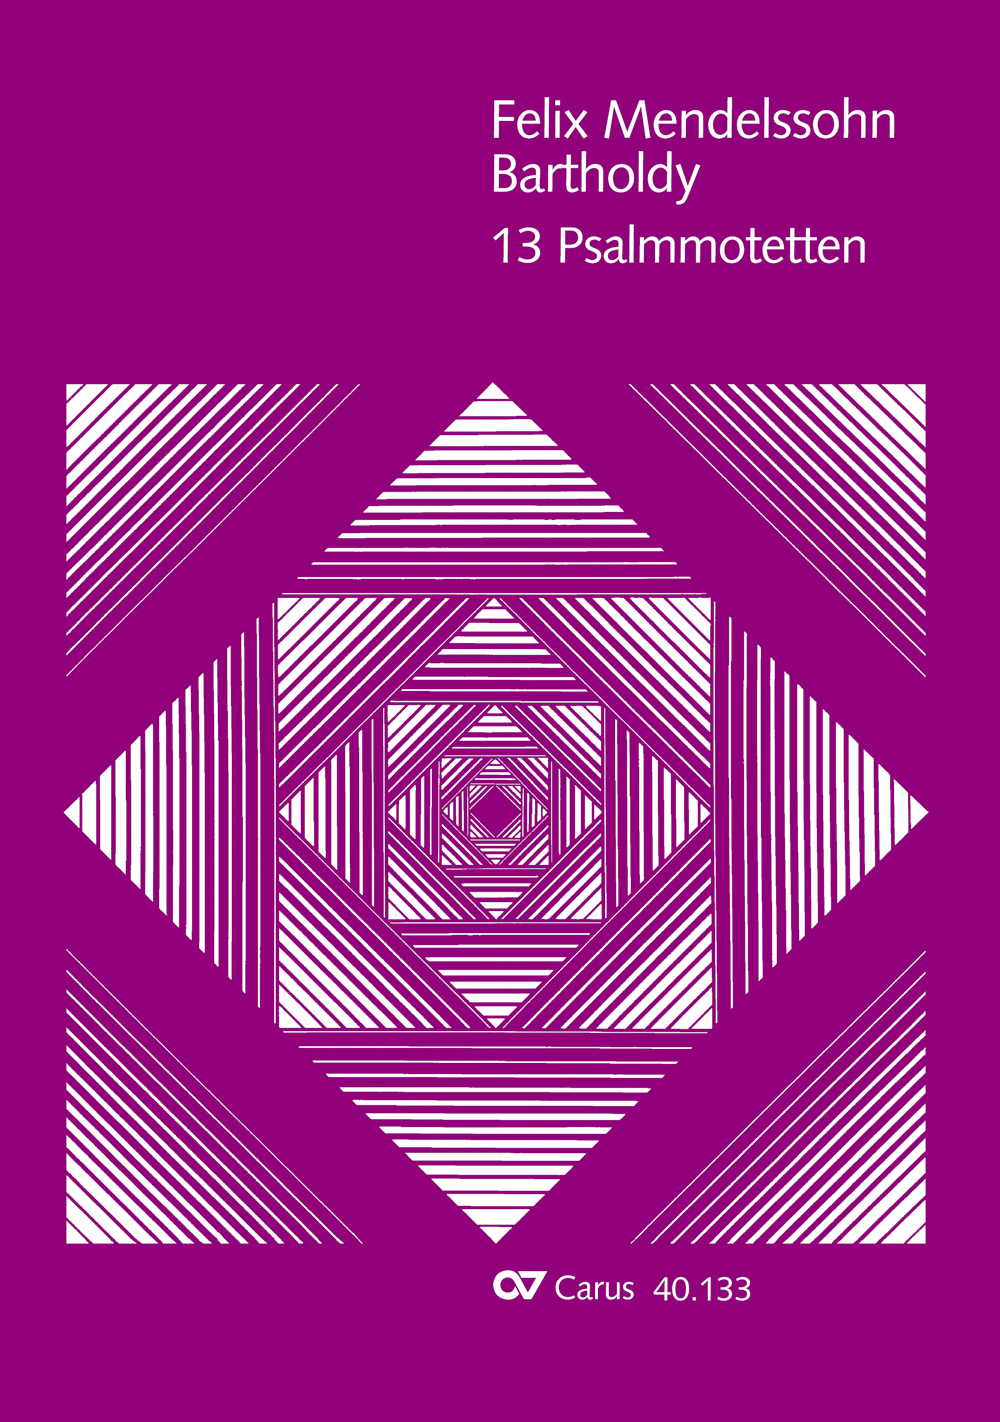 Mendelssohn: 13 Psalmmotetten (MENDELSSOHN-BARTHOLDY FELIX)